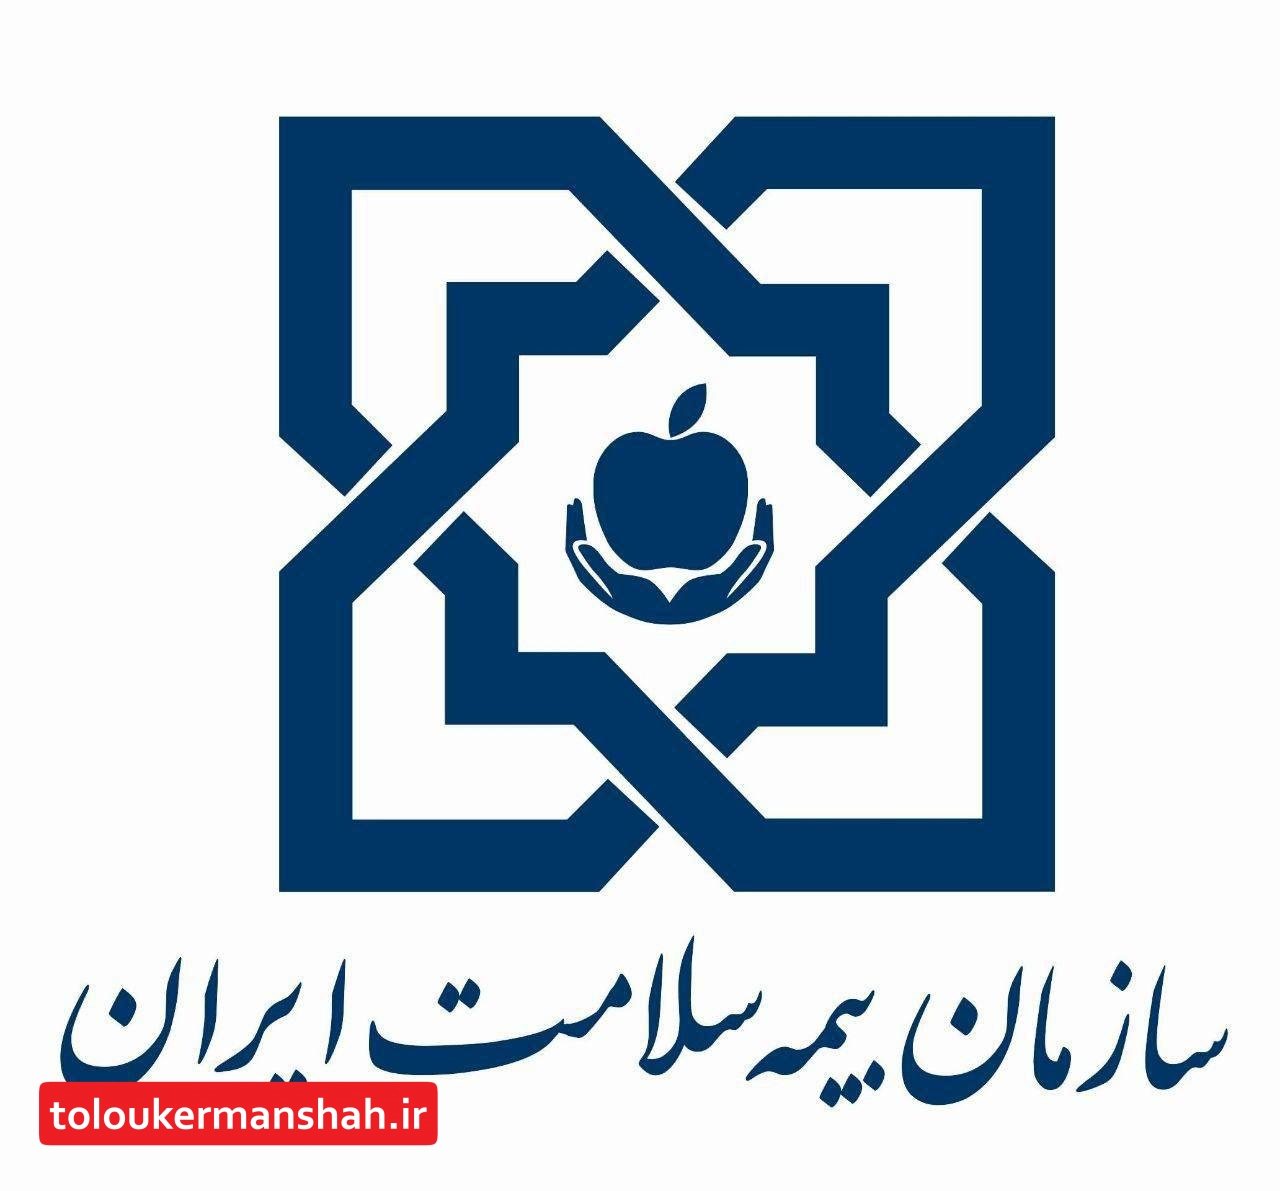 بیماران خاص استان کرمانشاه برای انتساب پزشک خانواده مراجعه کنند